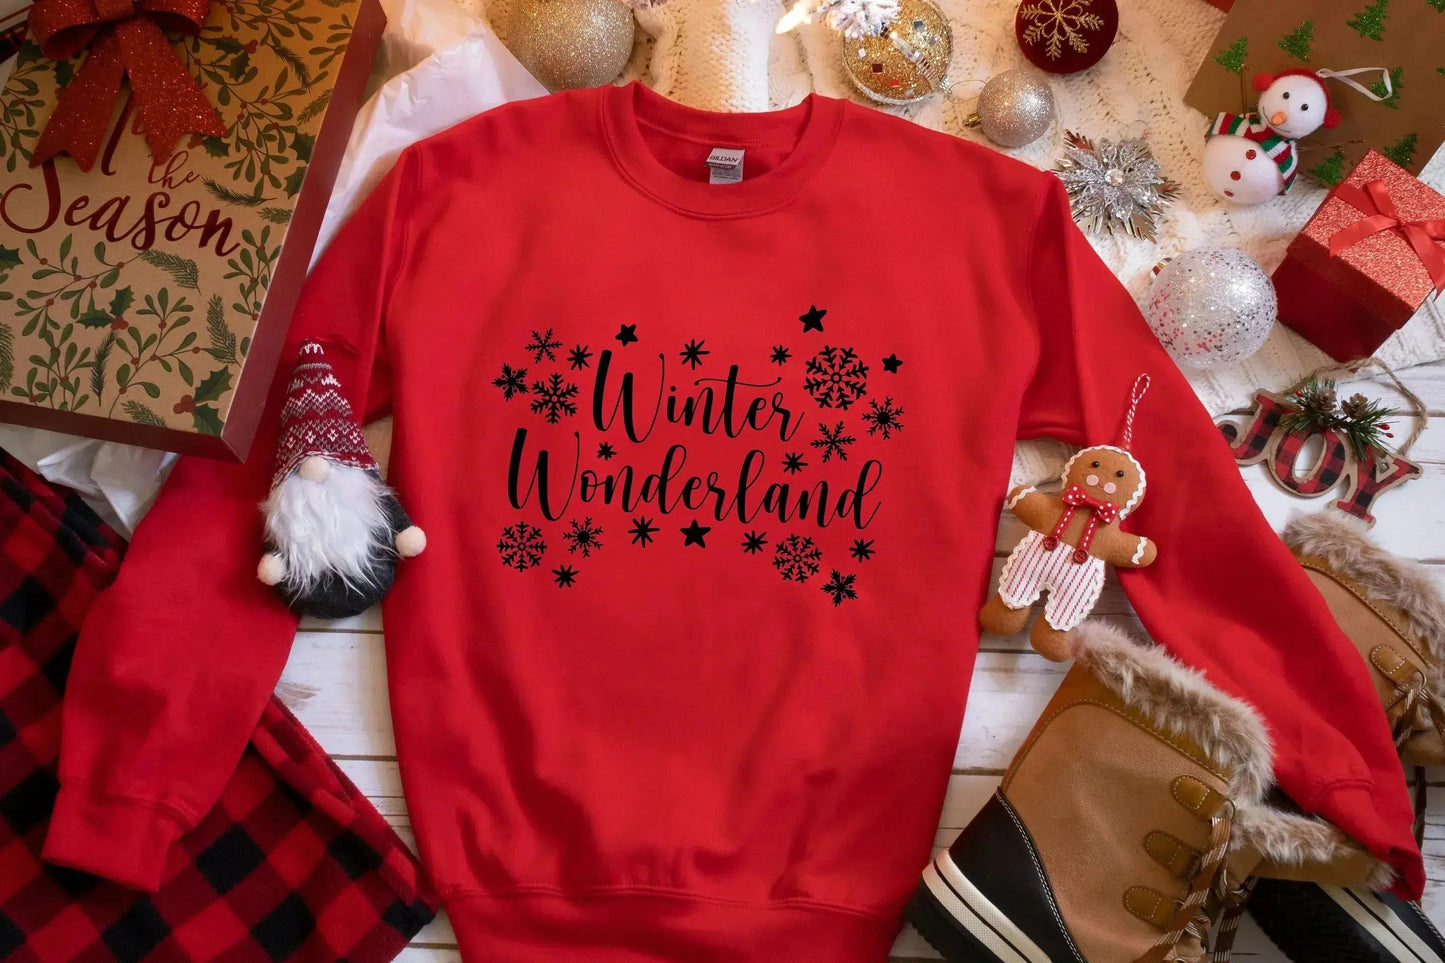 Winter Wonderland, Christmas T-shirt for Women, Funny Winter Shirt, Christmas Tee, Holiday Shirt, Women's Christmas, Holiday Shirt HMDesignStudioUS